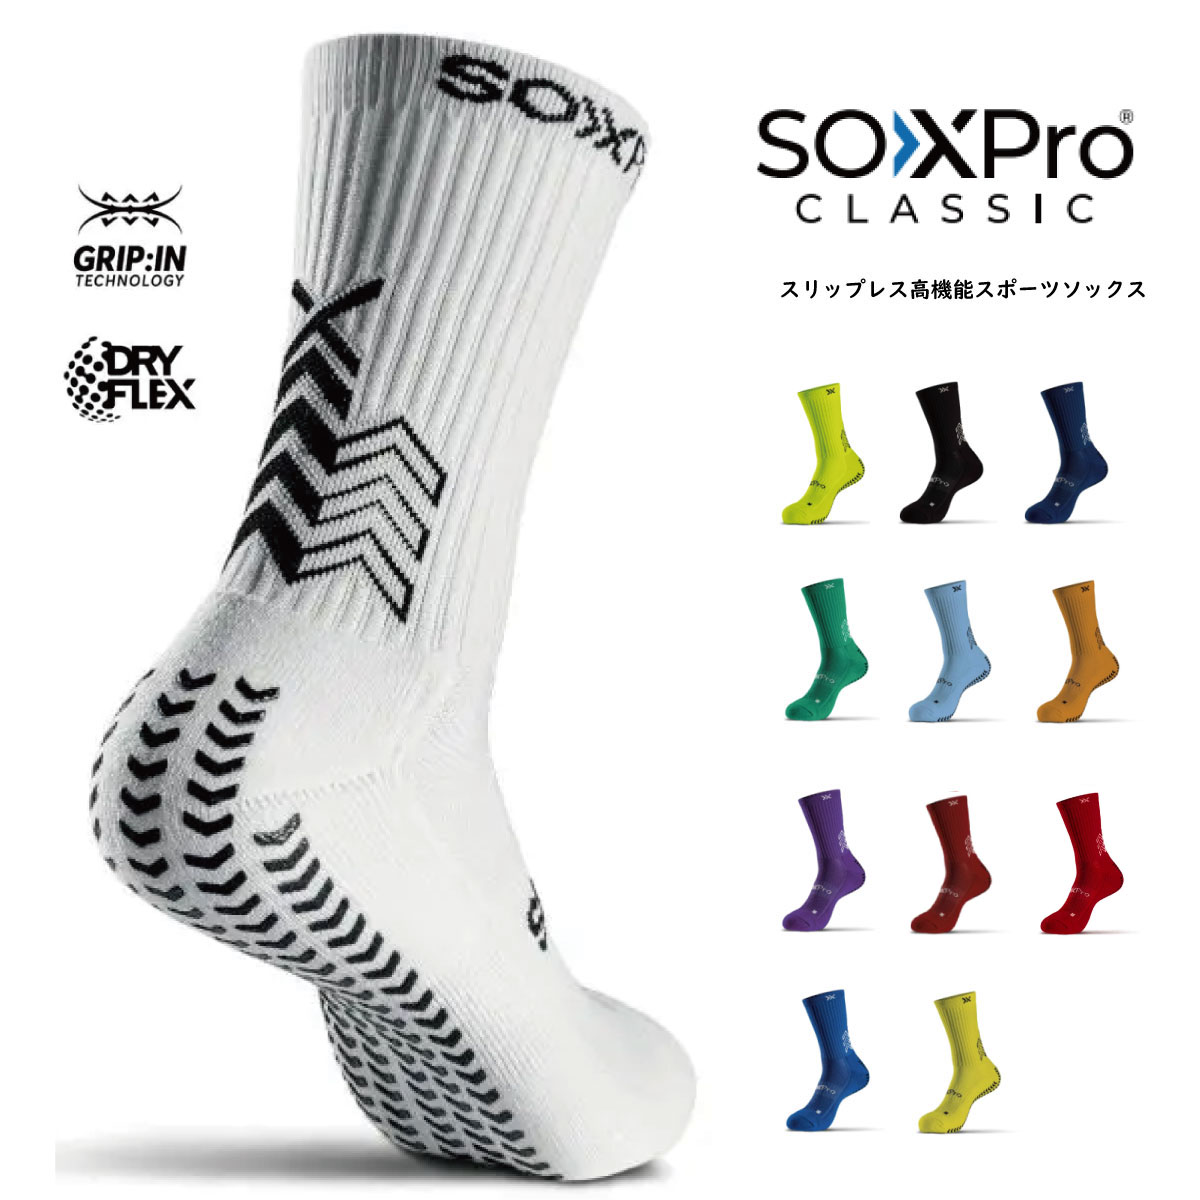 GEAR X PRO(ギア エックス プロ) SOXPro Classic SOXPro Classic ソックスプロクラシック  グリップソックス スポーツ 靴下